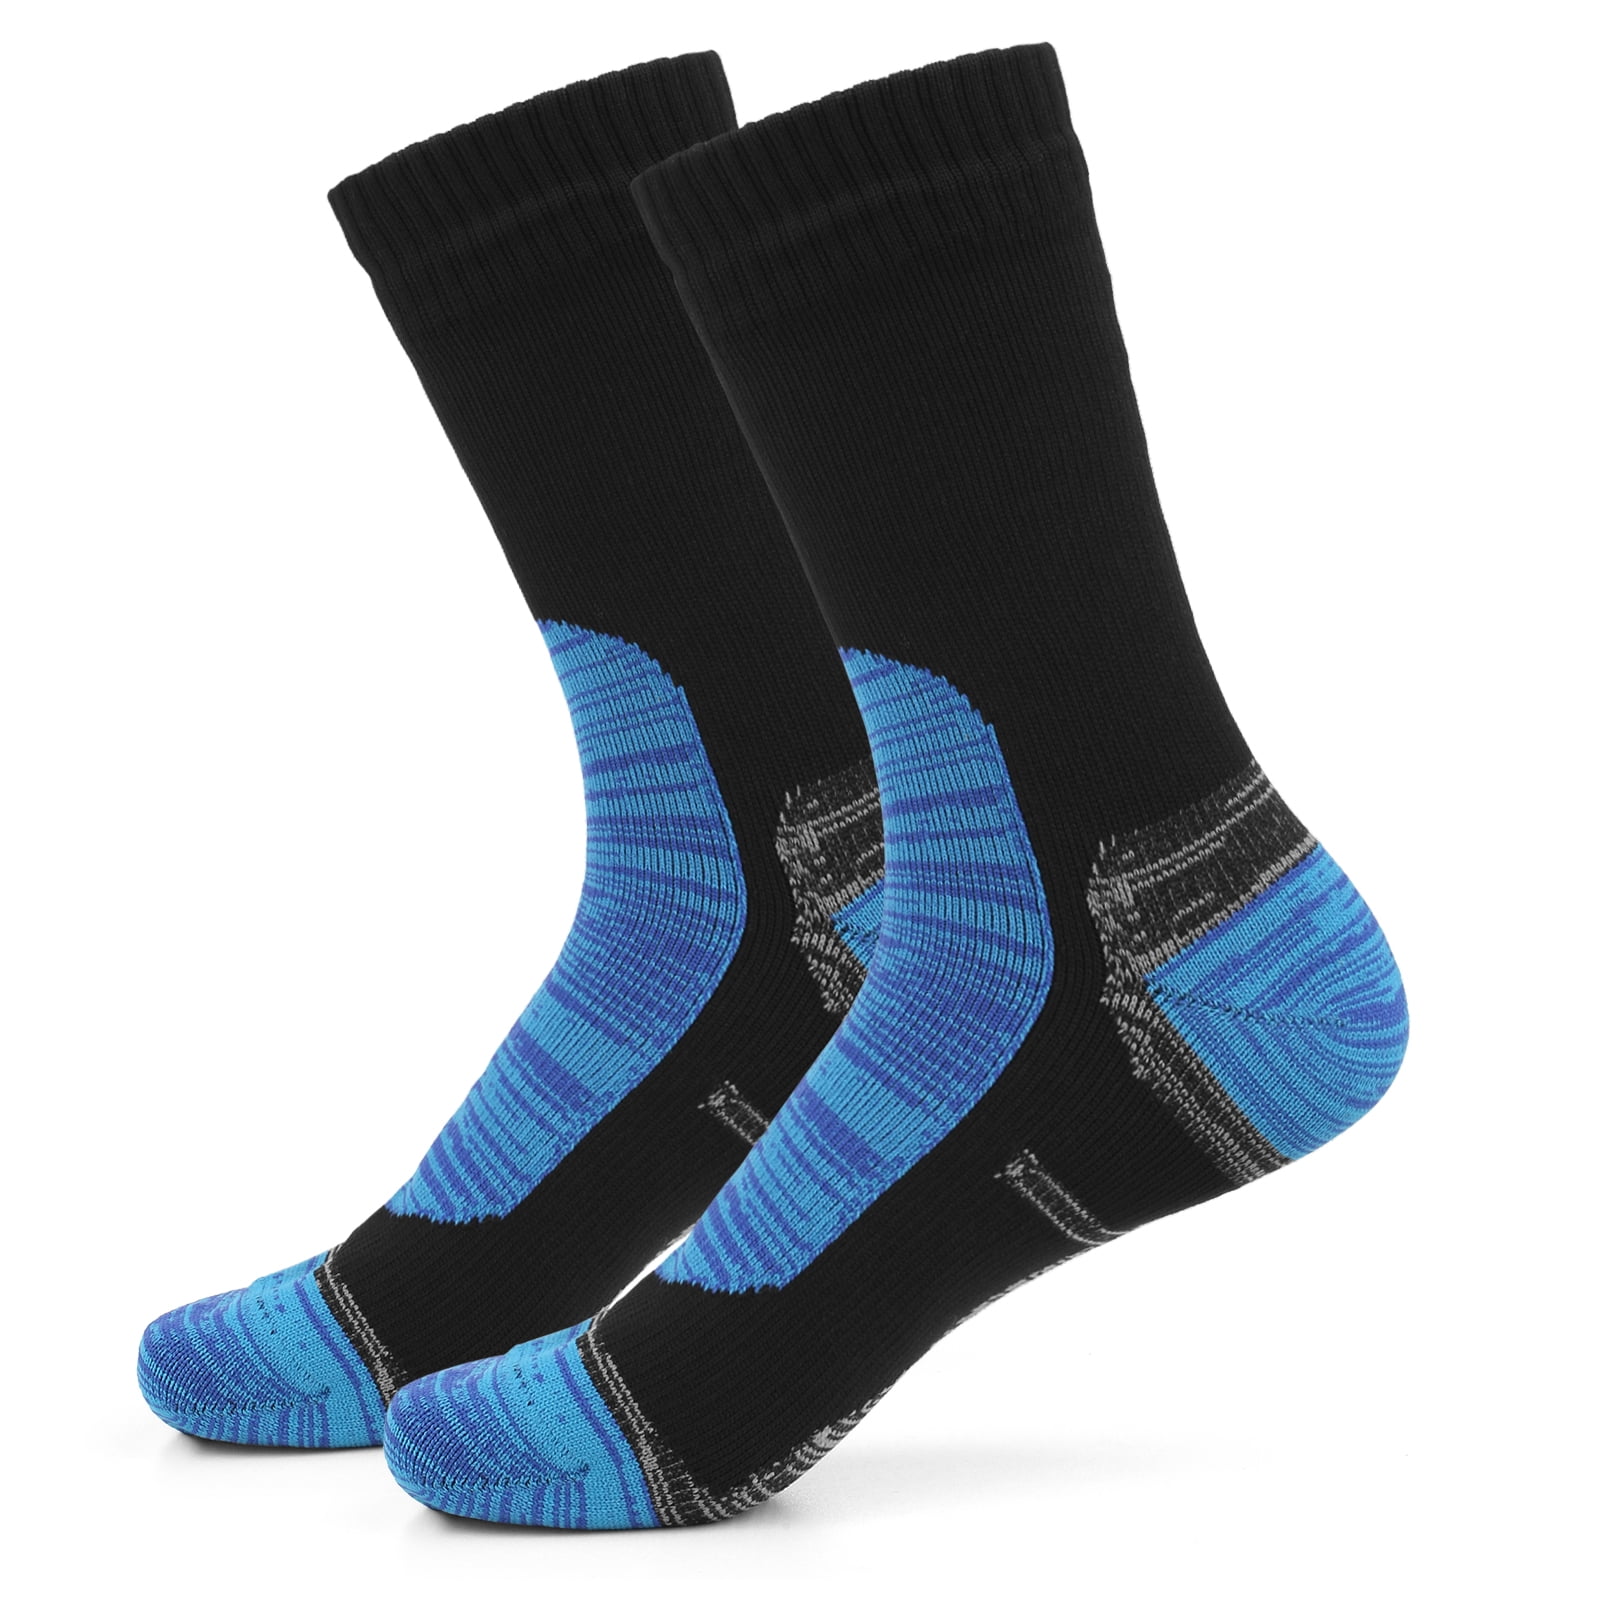 ZEAL WOOD Merino Wool Socks Hiking Socks Thermal Outdoor Sports Socks 